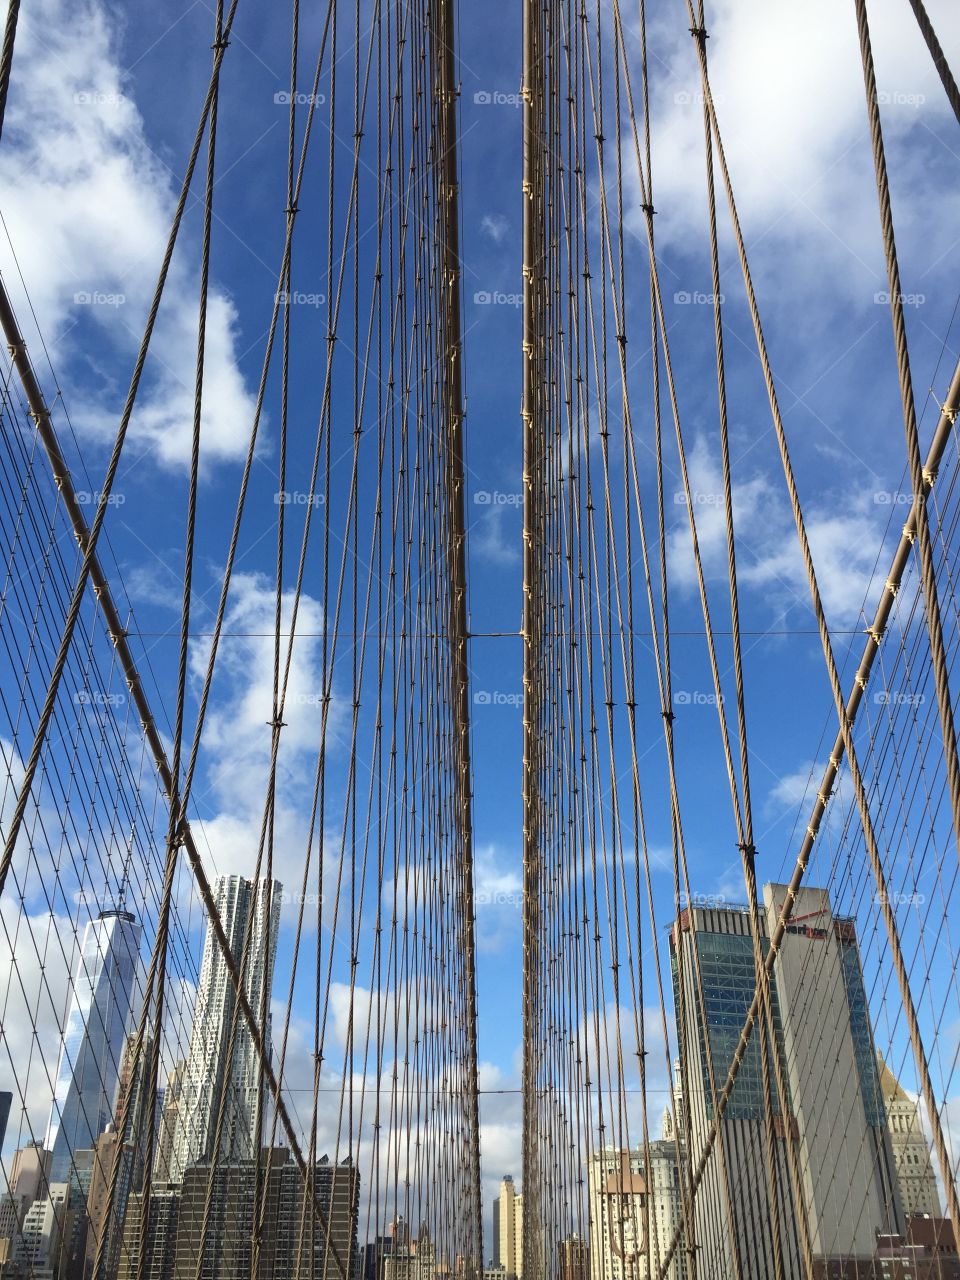 Brooklyn Bridge - NY Abstract photo.